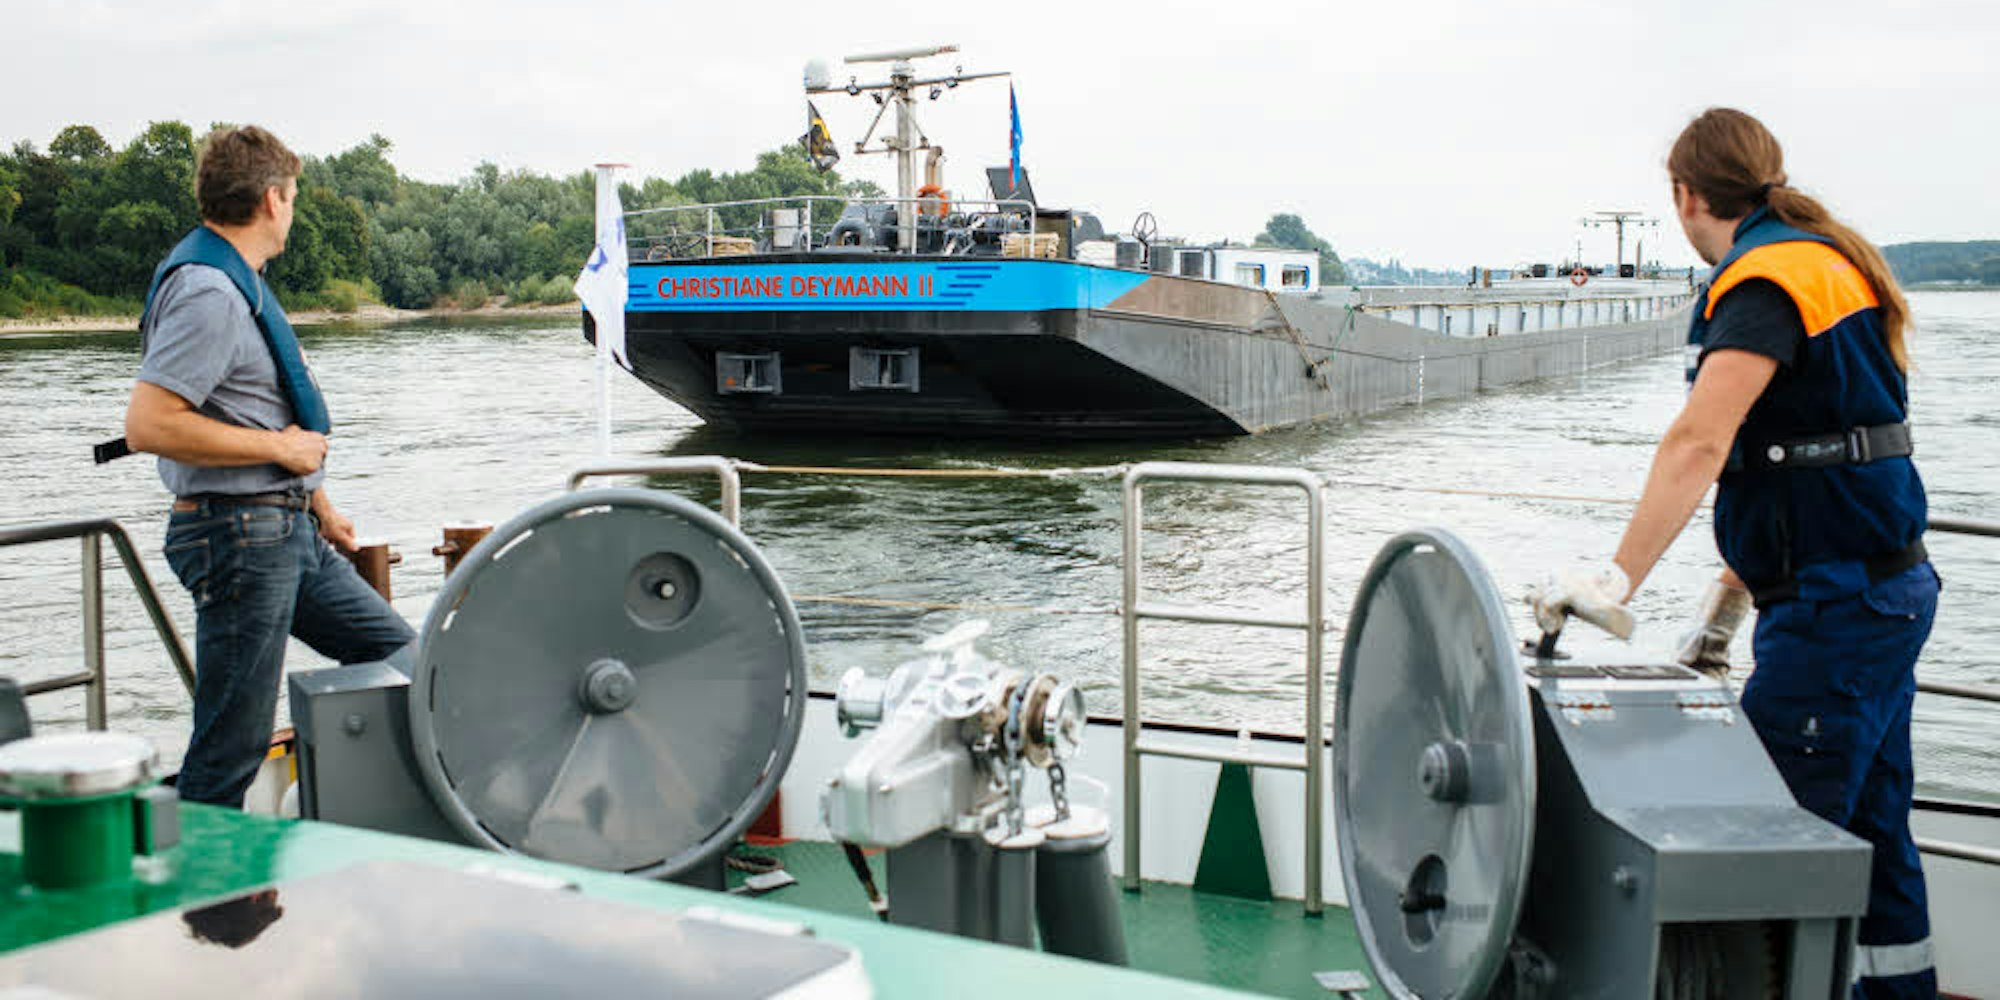 Verfahrene Lage: Der 5000 Tonnen fassende Koppelverband „Christiane Deymann“ sitzt auf dem Grund des Rheins fest,